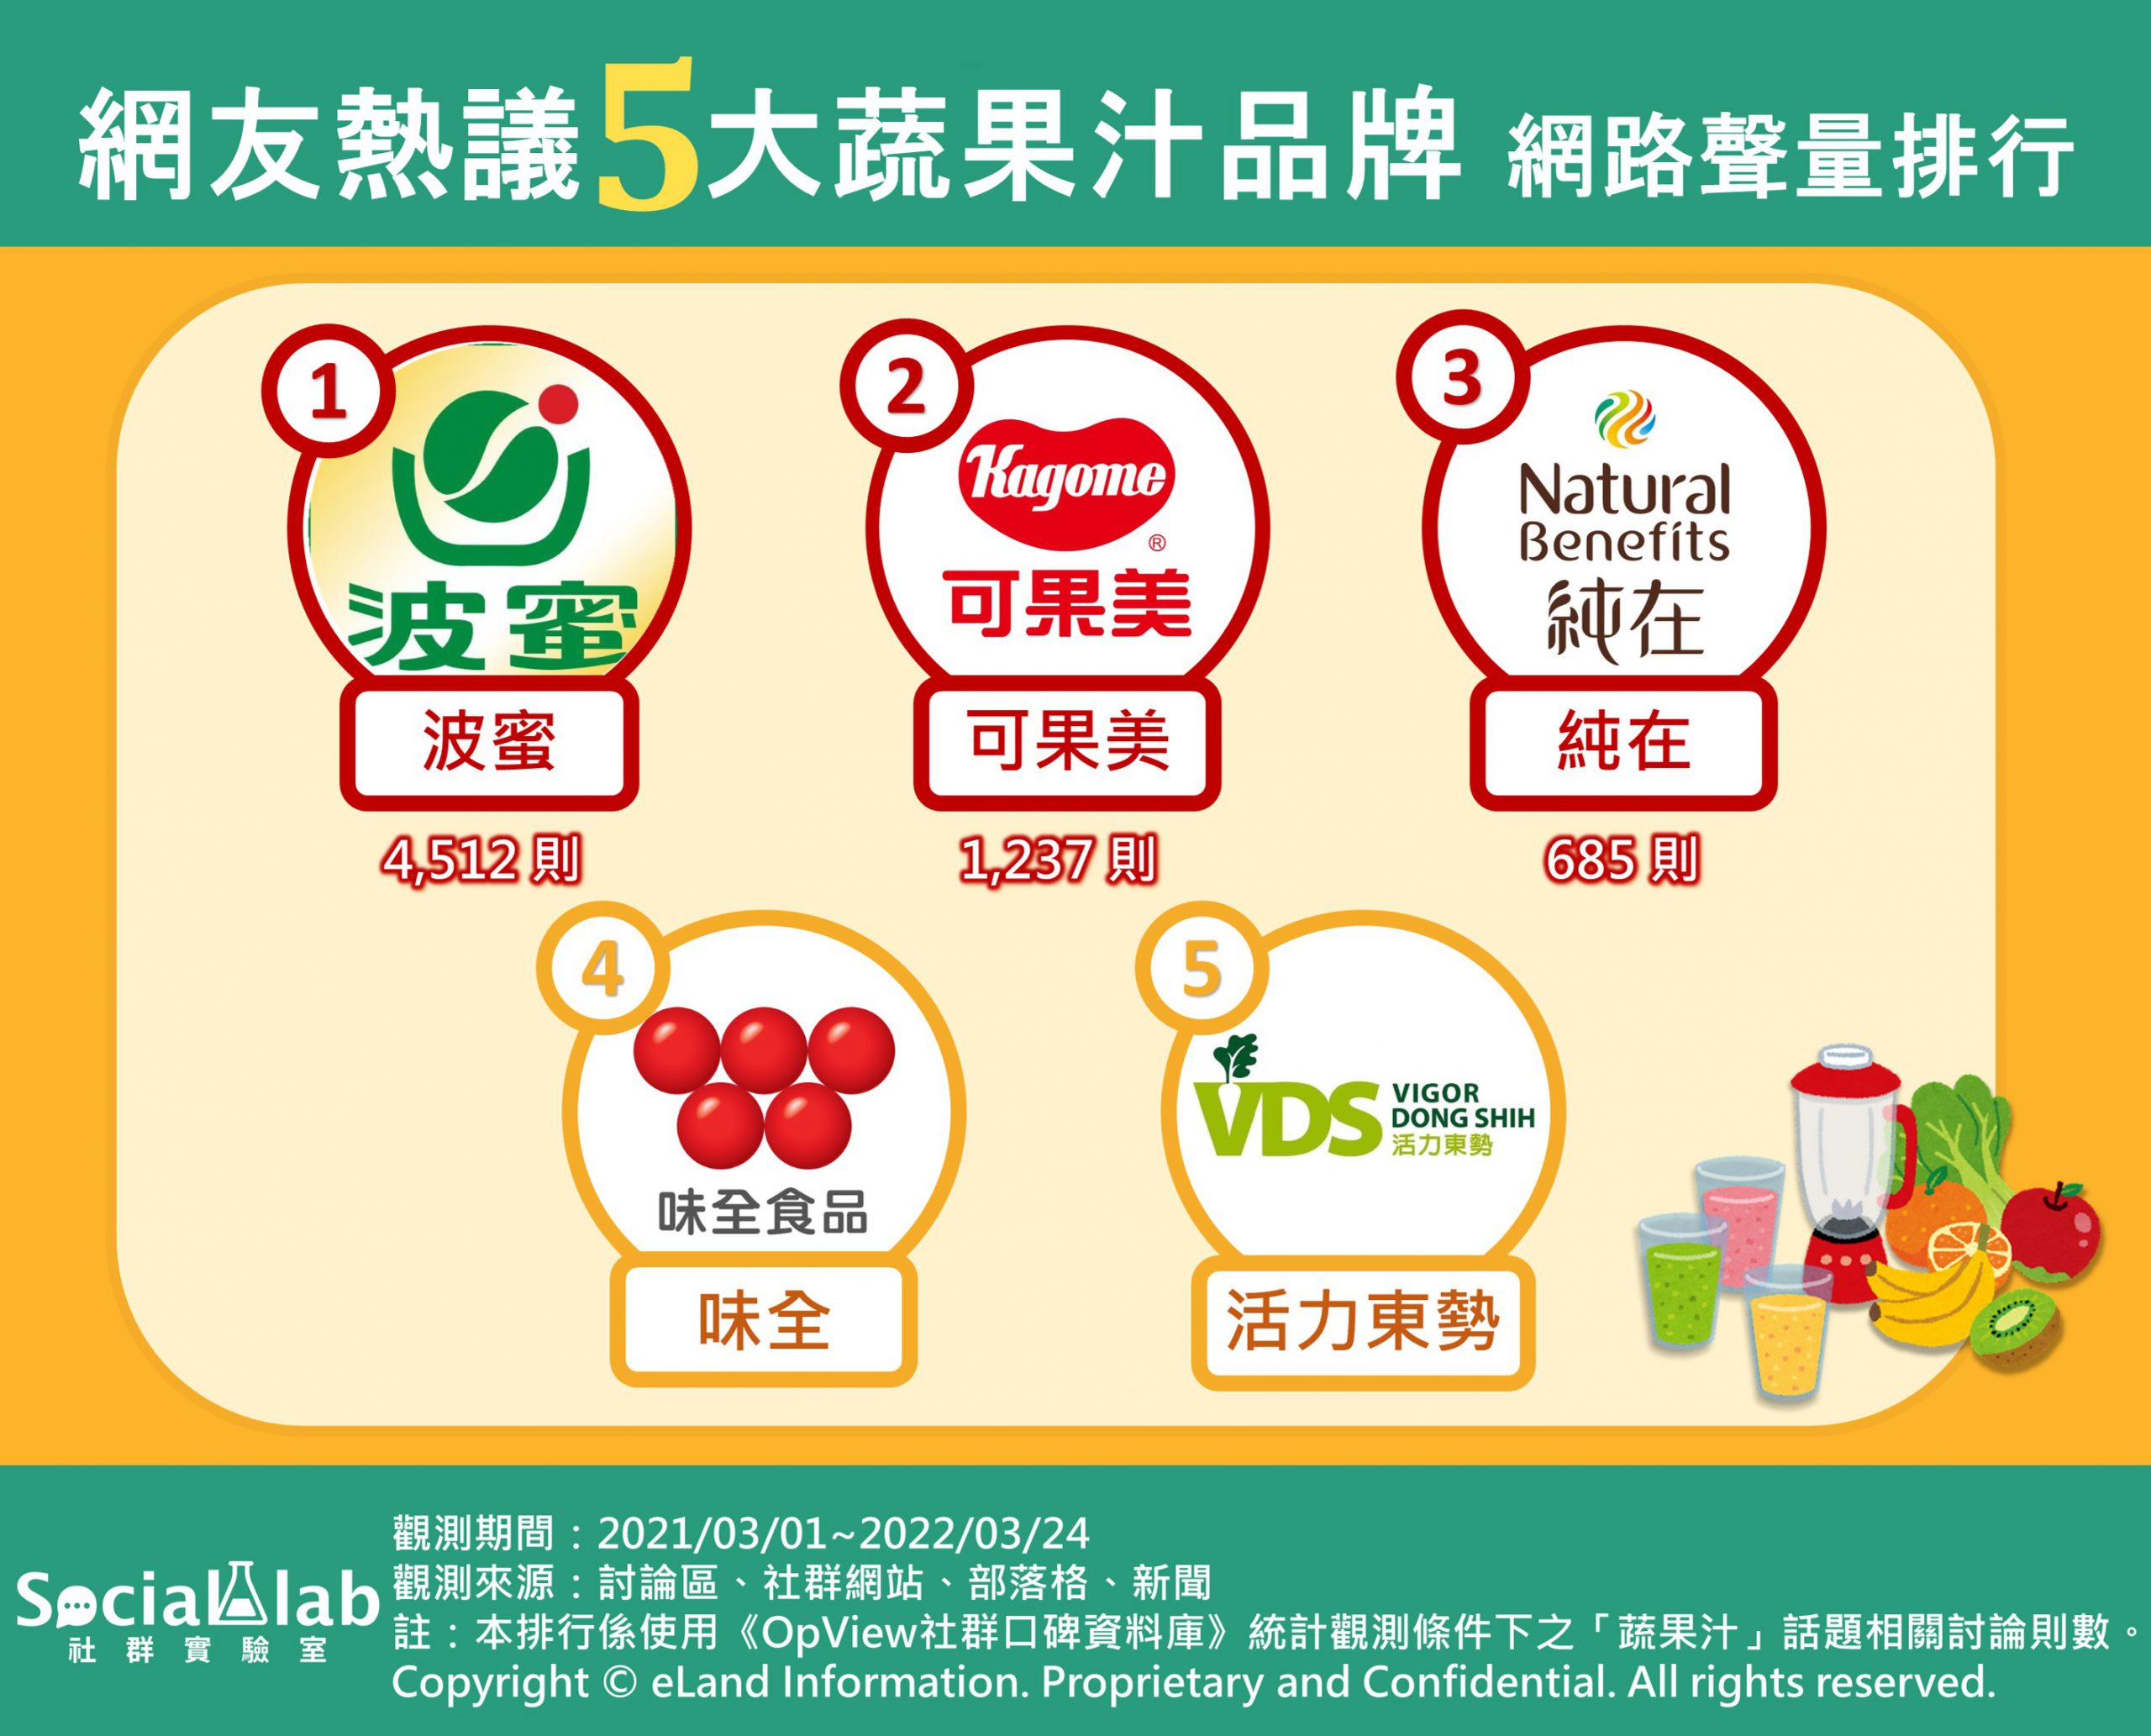 網友熱議5大蔬果汁品牌網路聲量排行